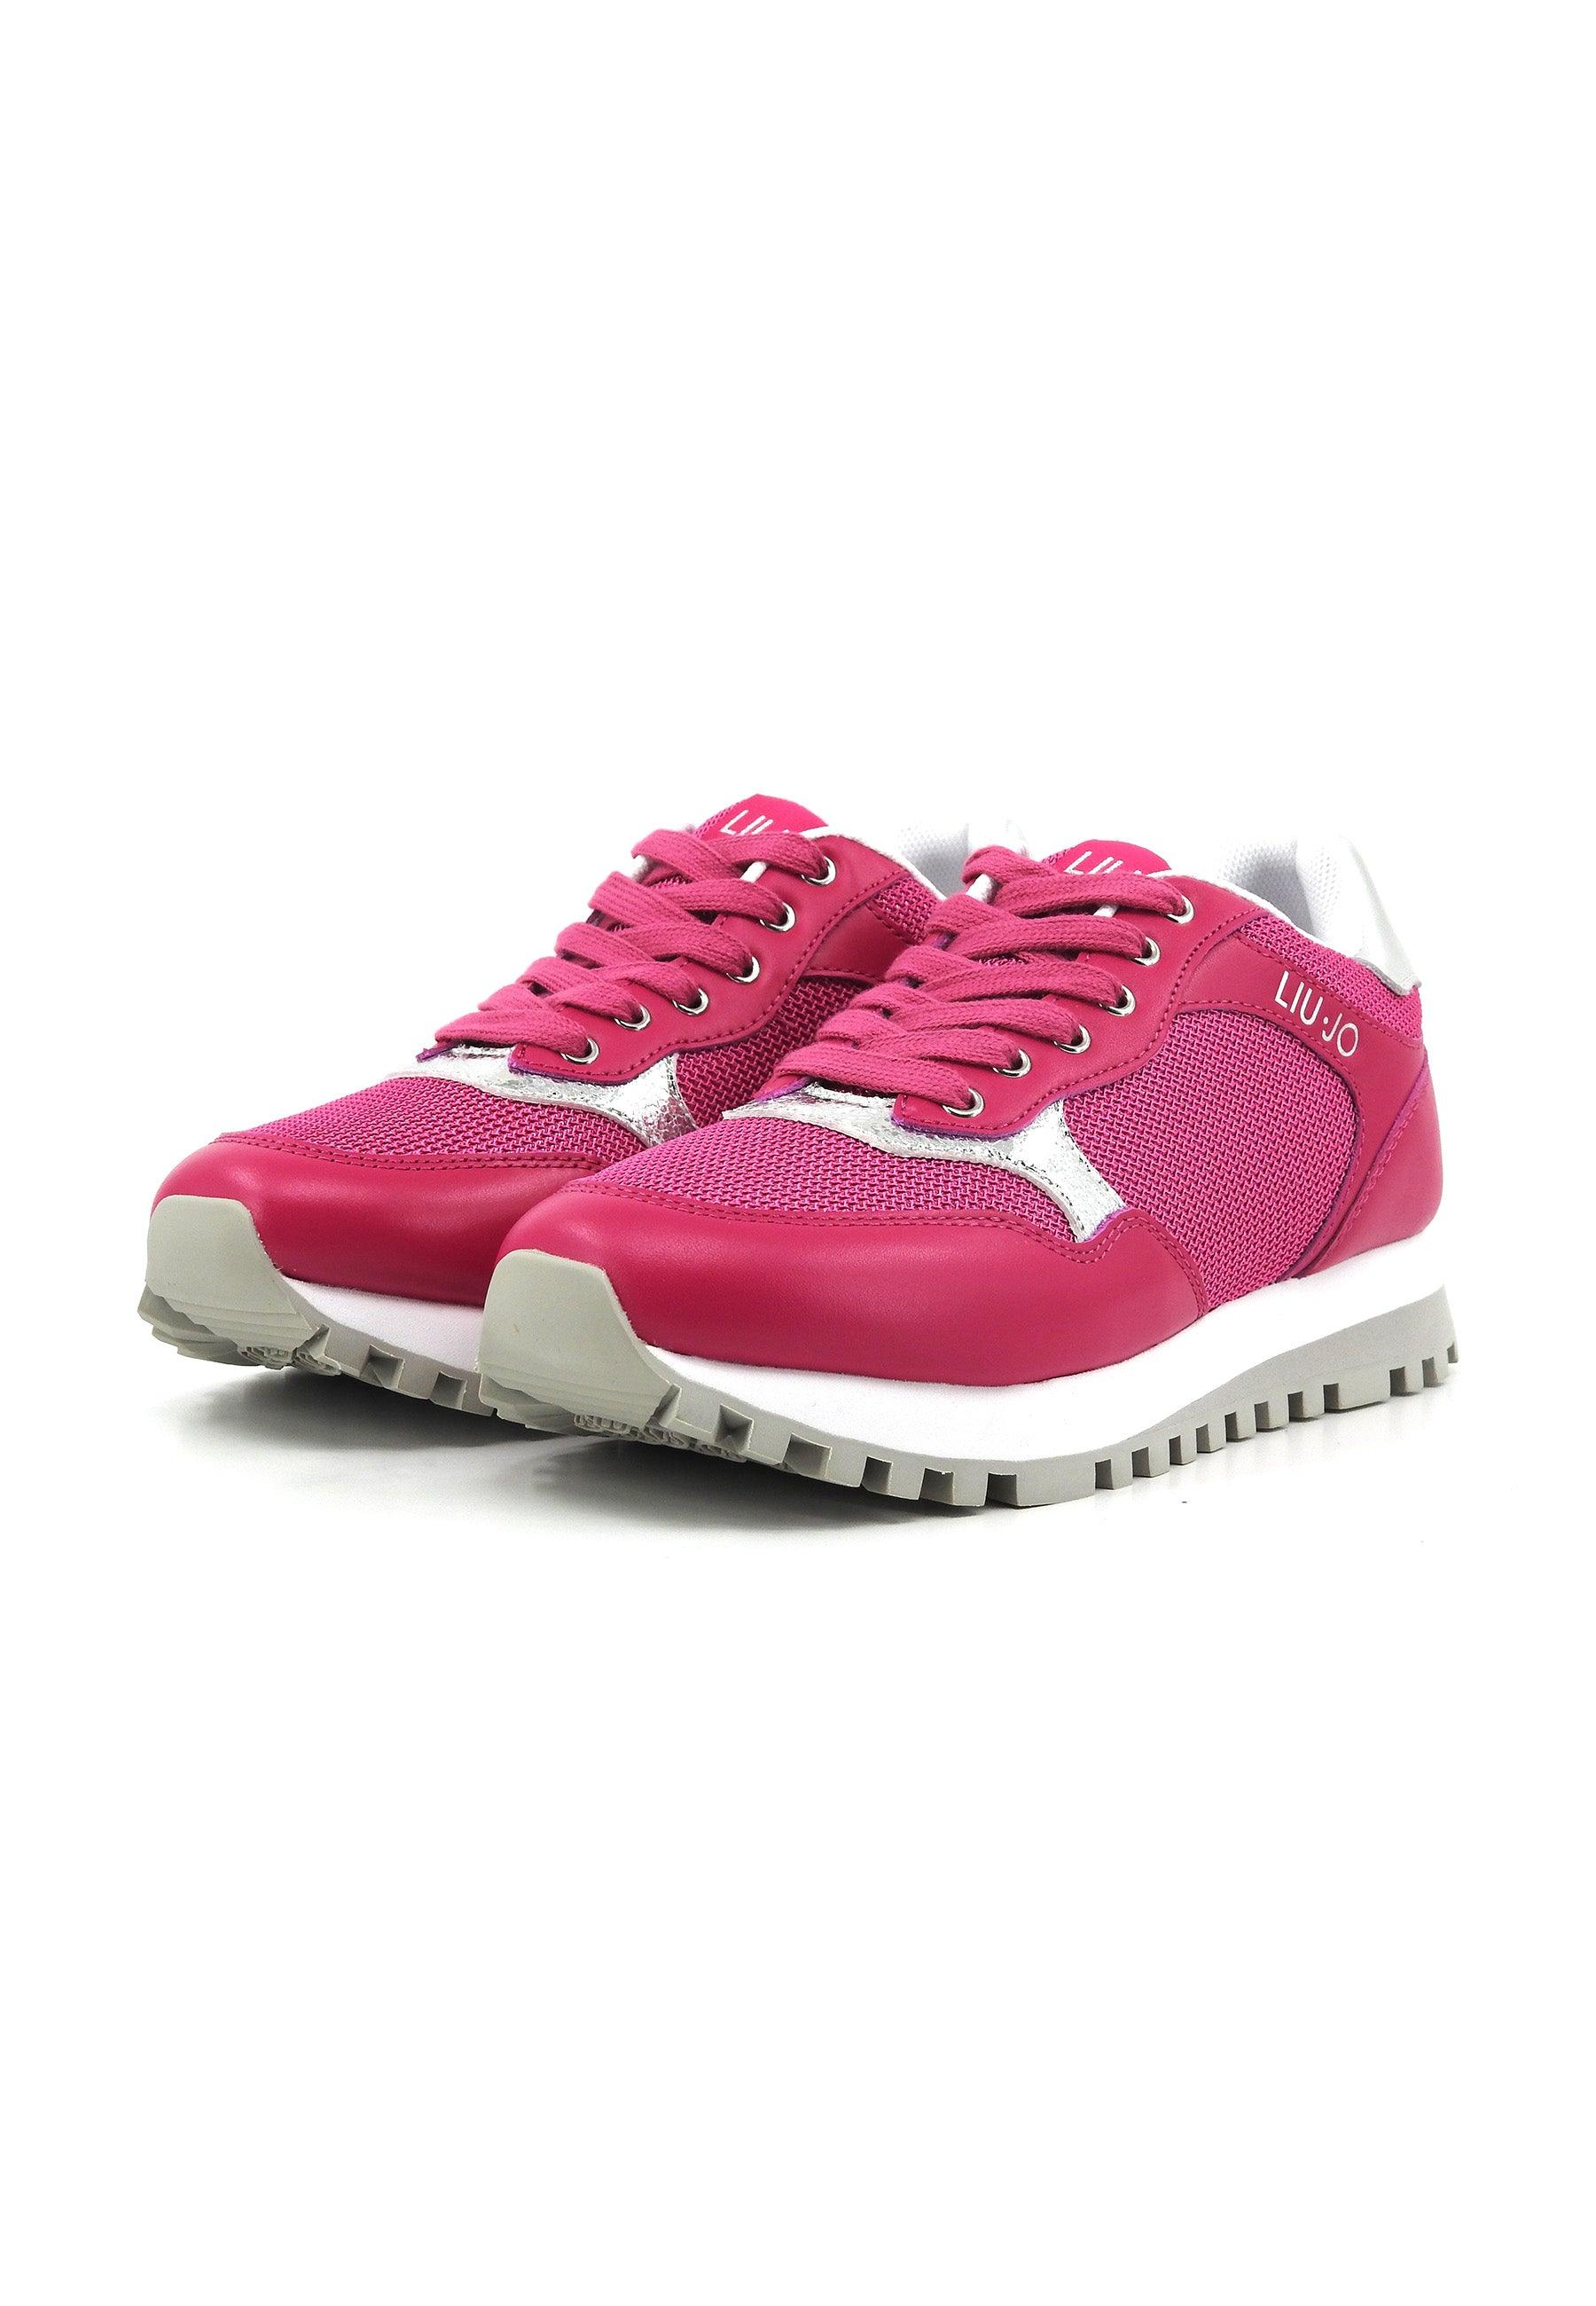 LIU JO Wonder 39 Sneaker Donna Pink BA4067PX030 - Sandrini Calzature e Abbigliamento